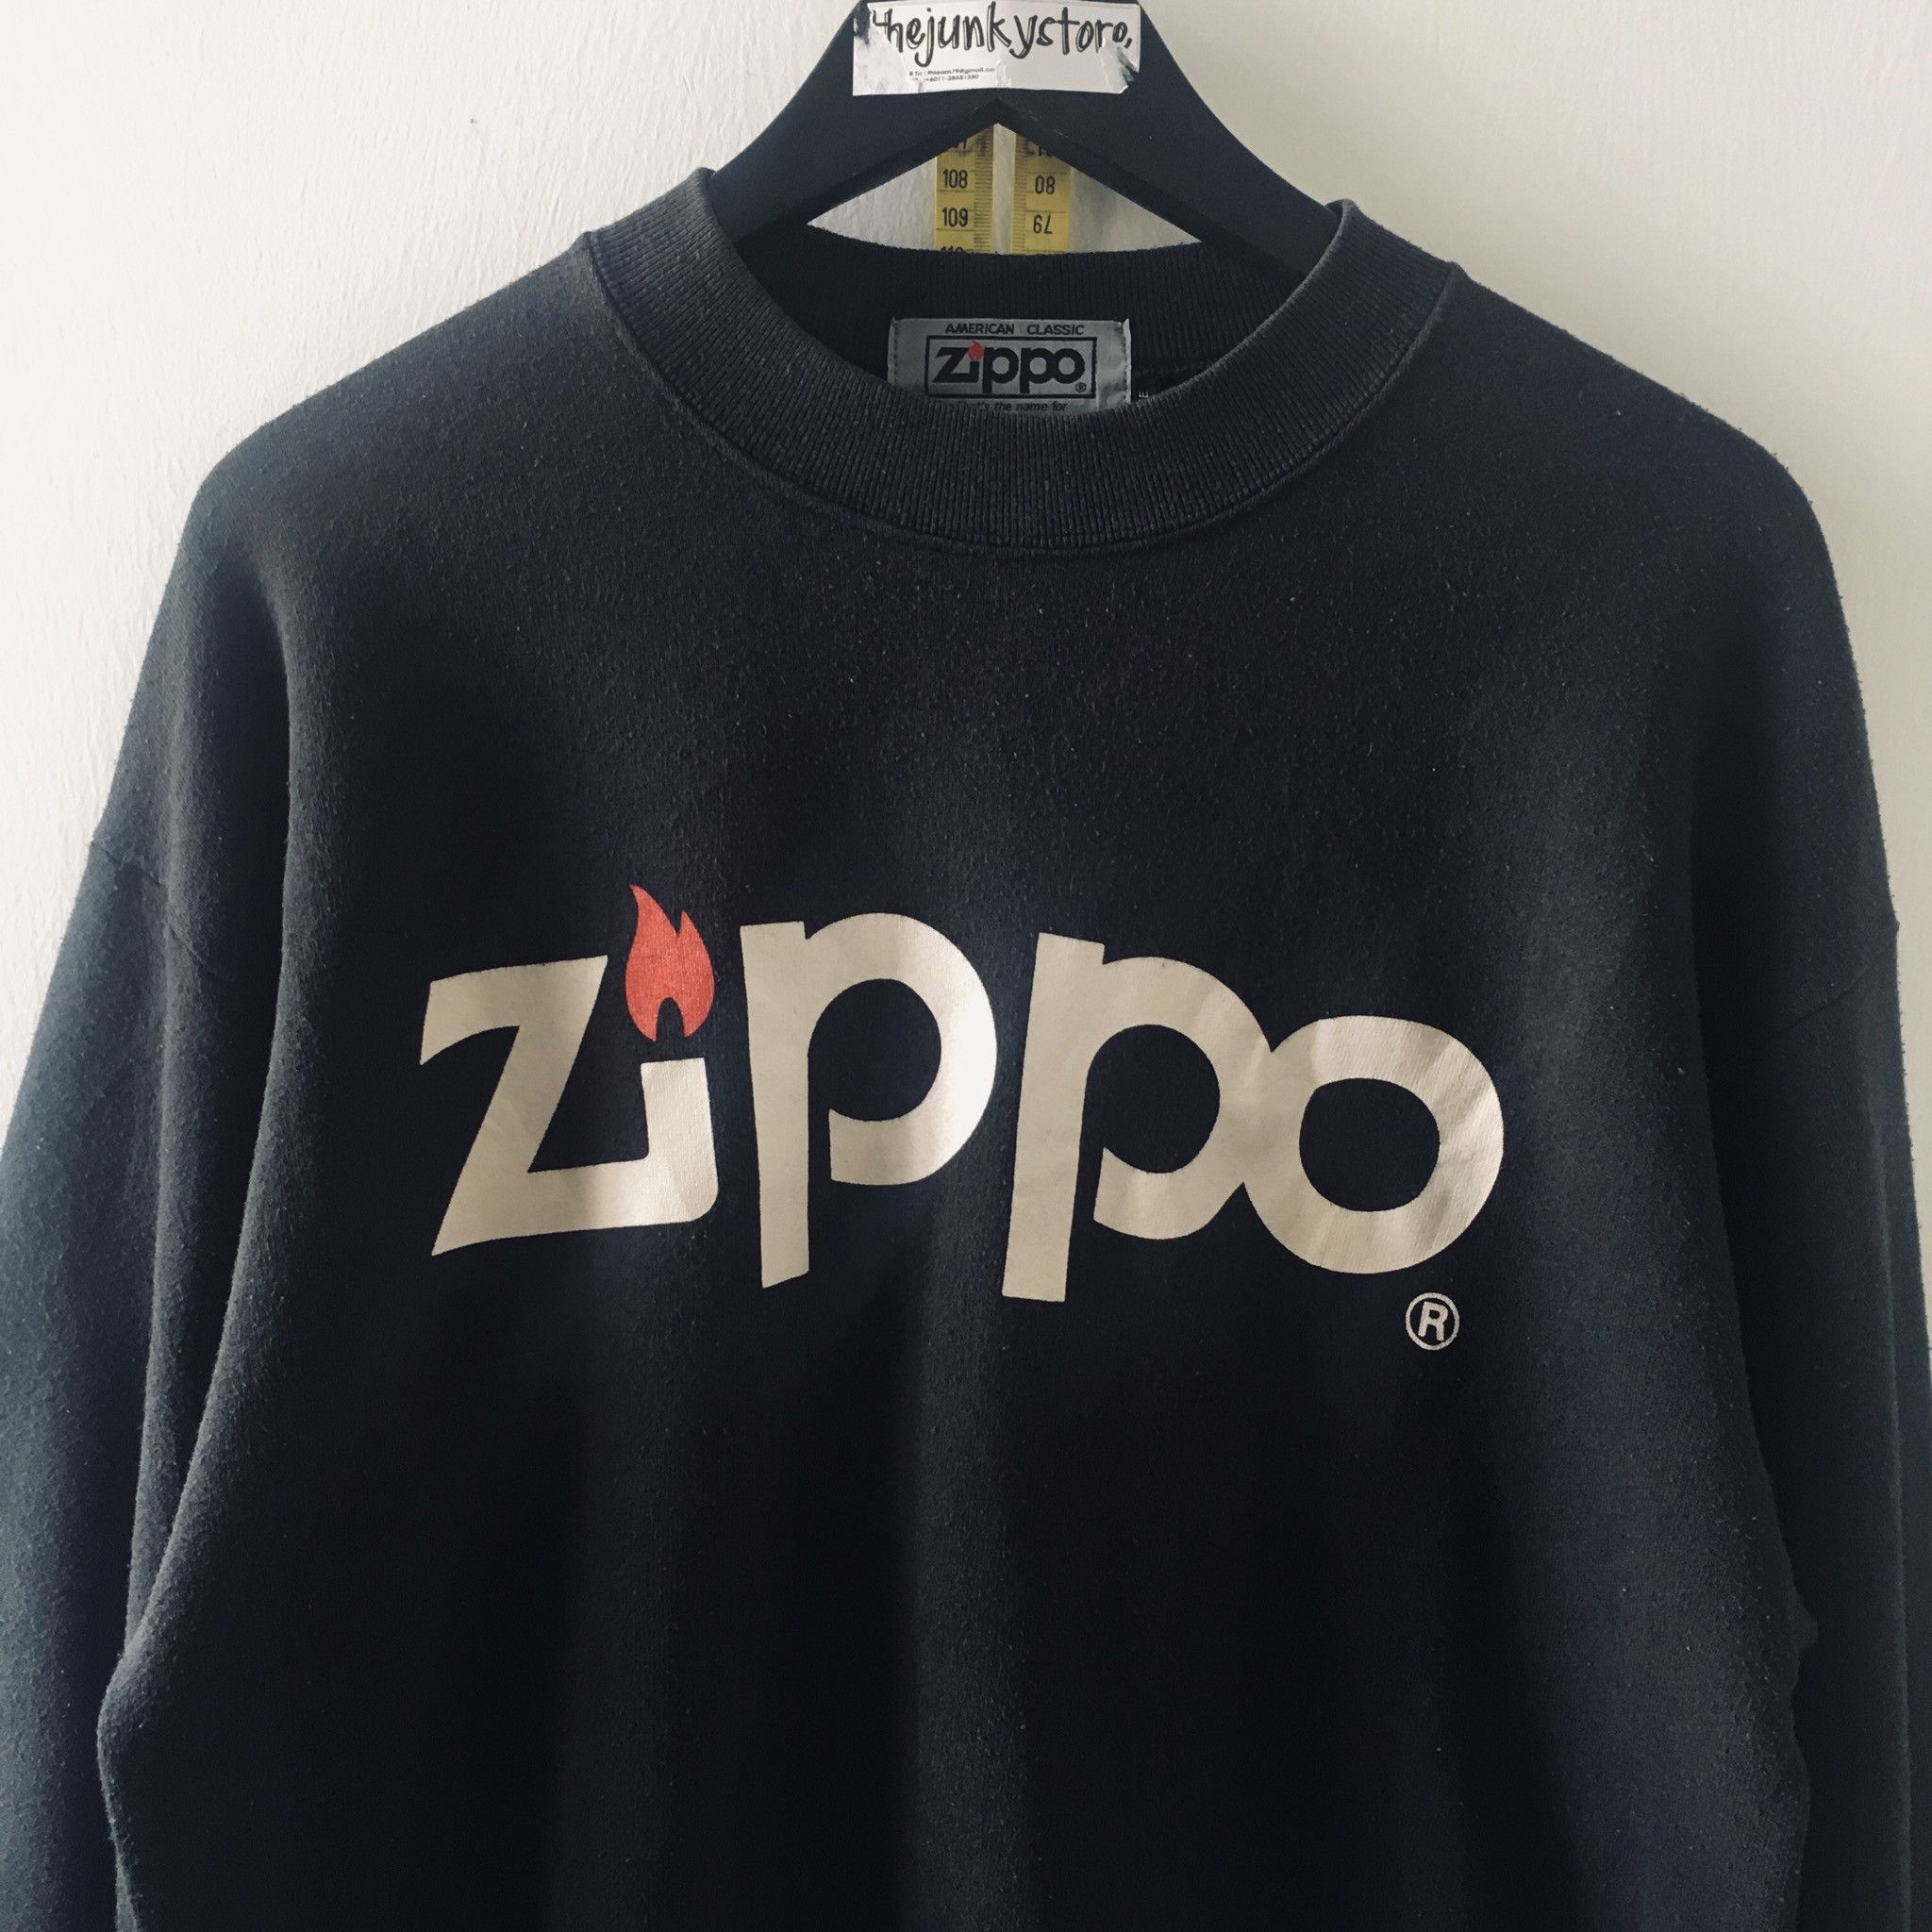 Vintage Vintage 90s x Zippo Sweatshirt x Fruit Of The Loom Size US L / EU 52-54 / 3 - 2 Preview